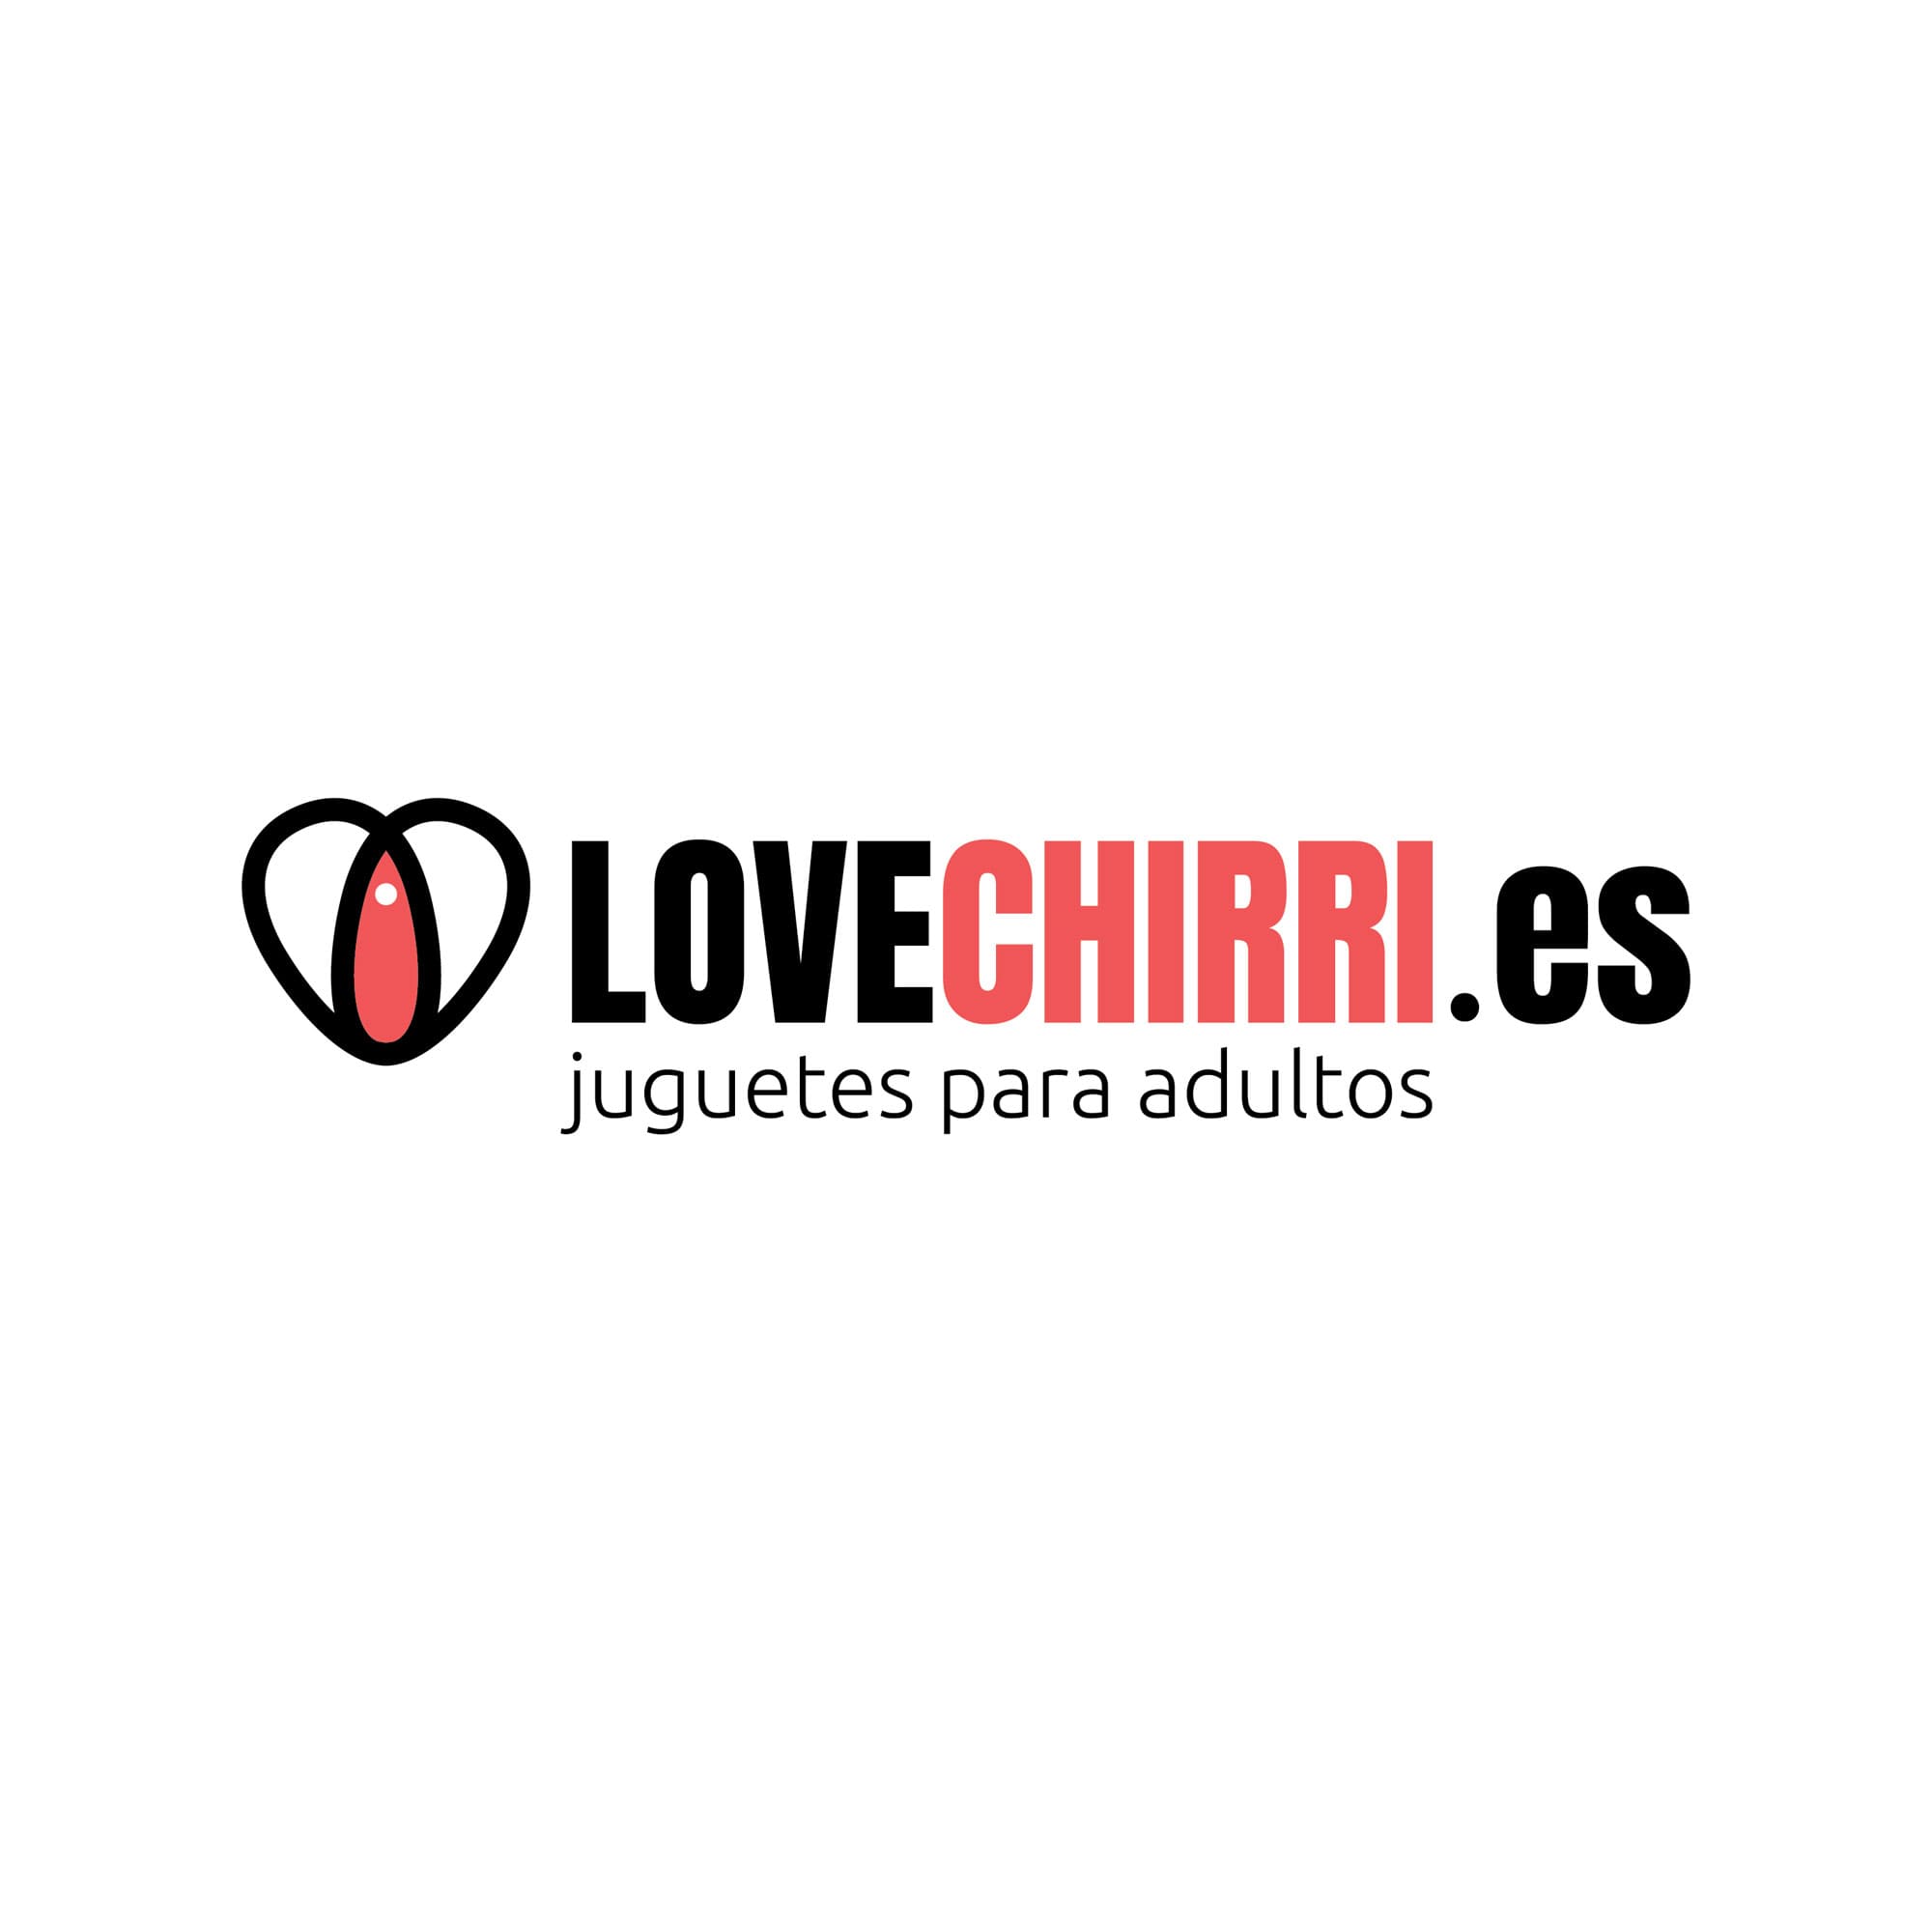 Logotipo en versión original para Lovechirri.es, empresa de venta online de juguetes para adultos